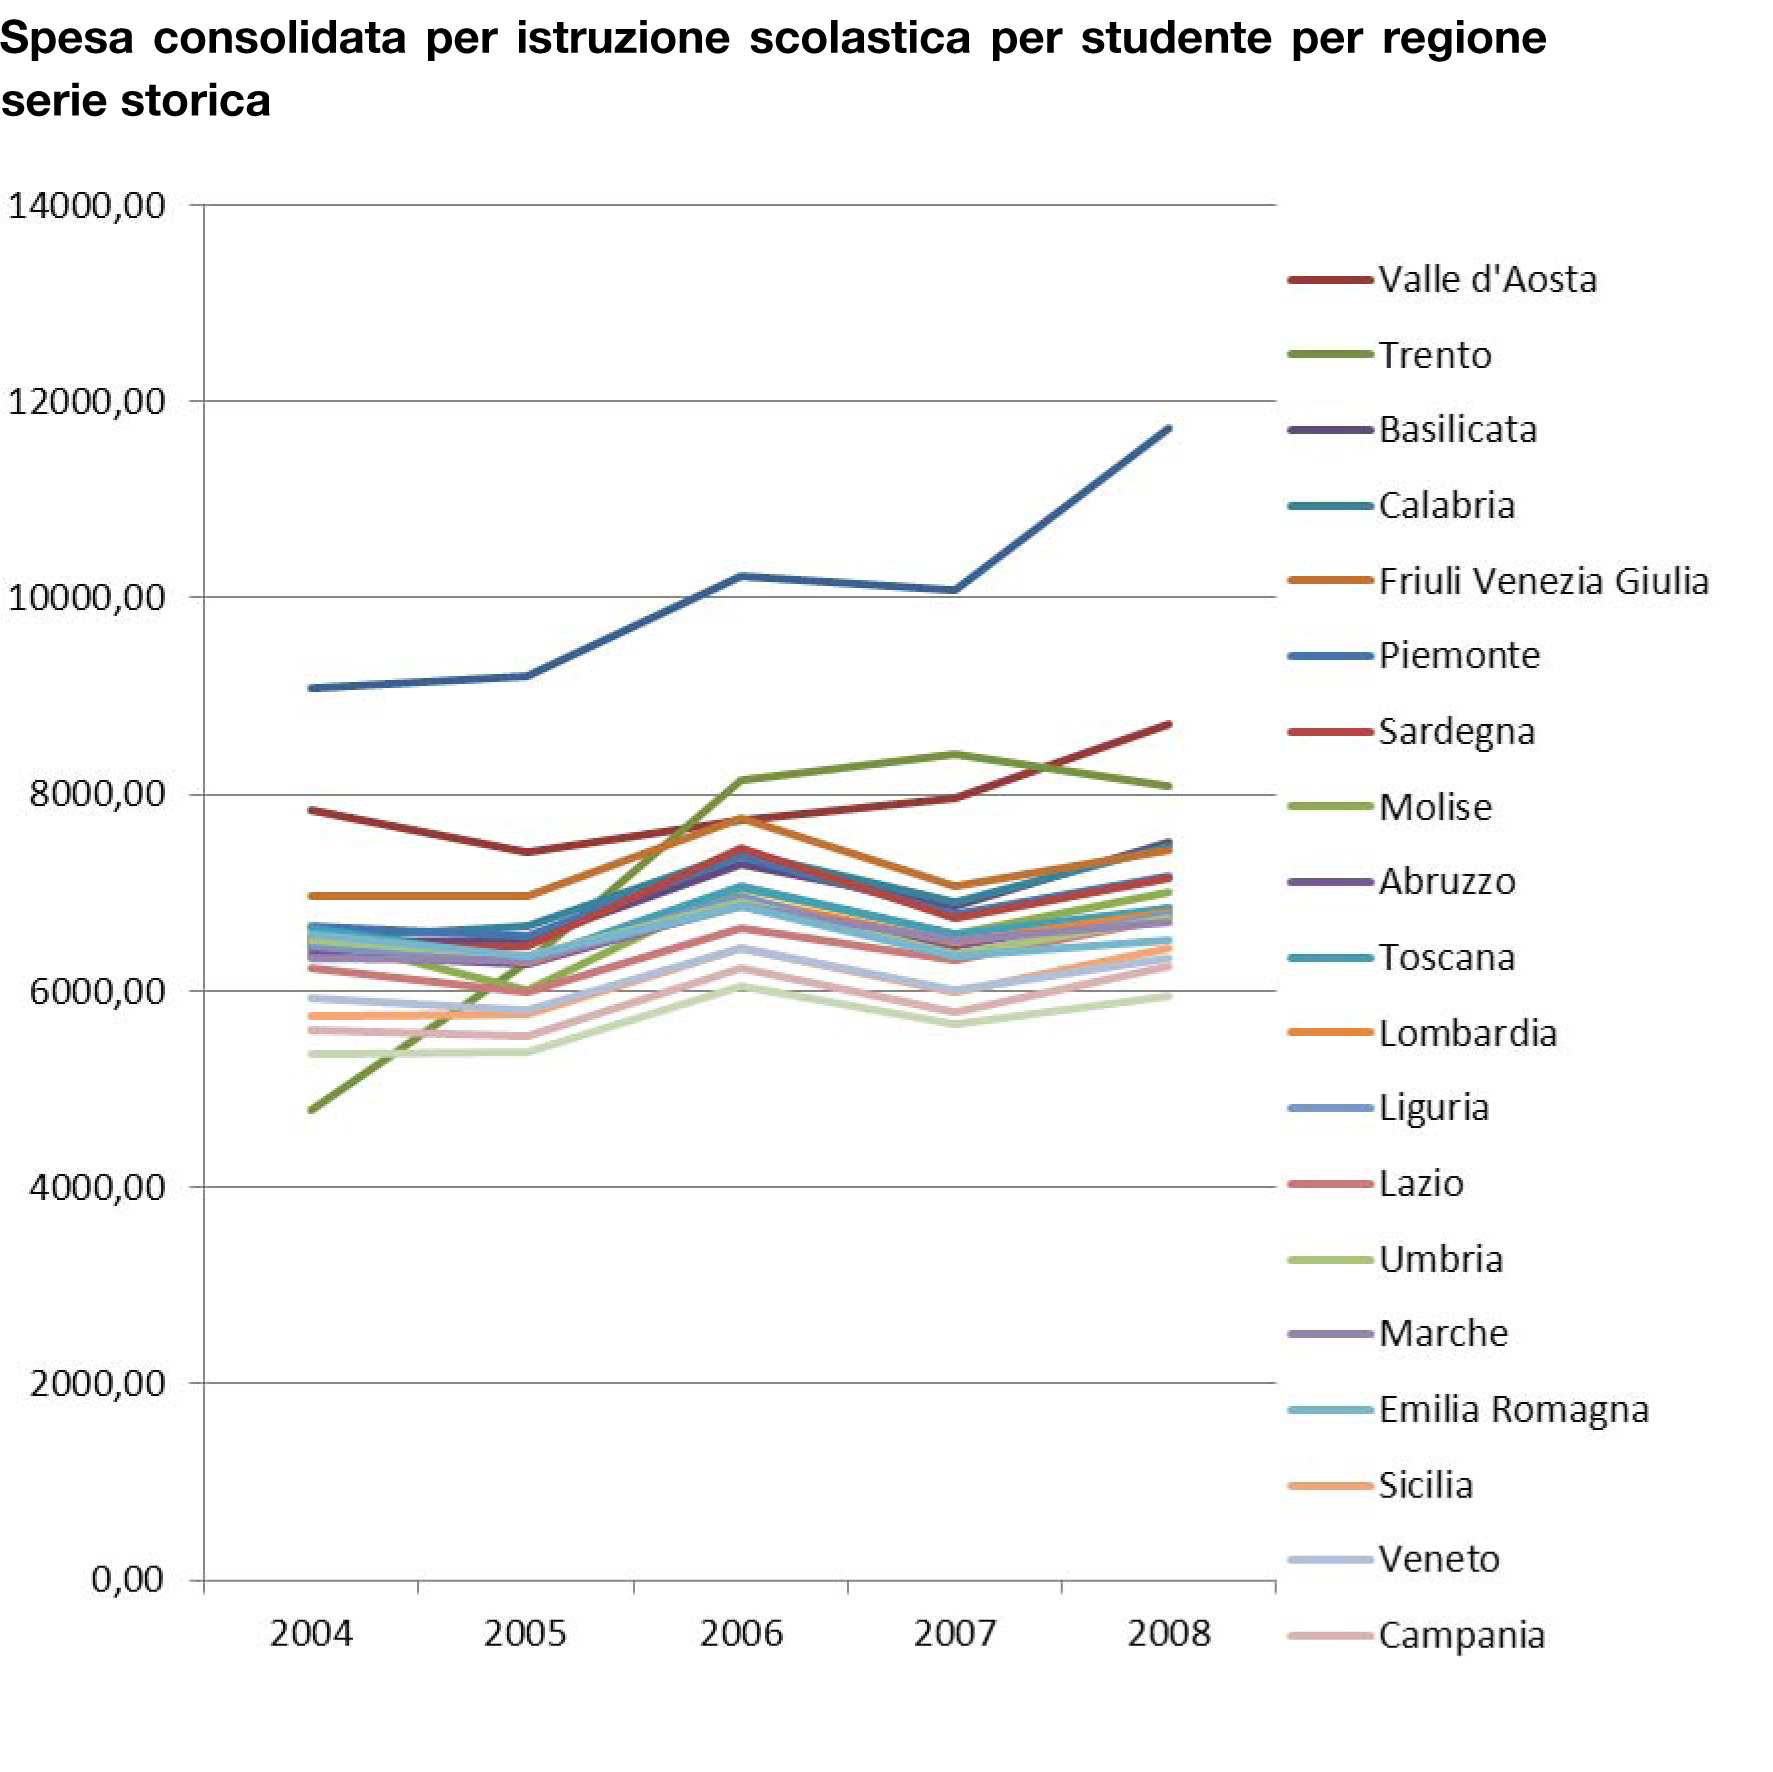 Spesa per studente dal 2004 al 2008